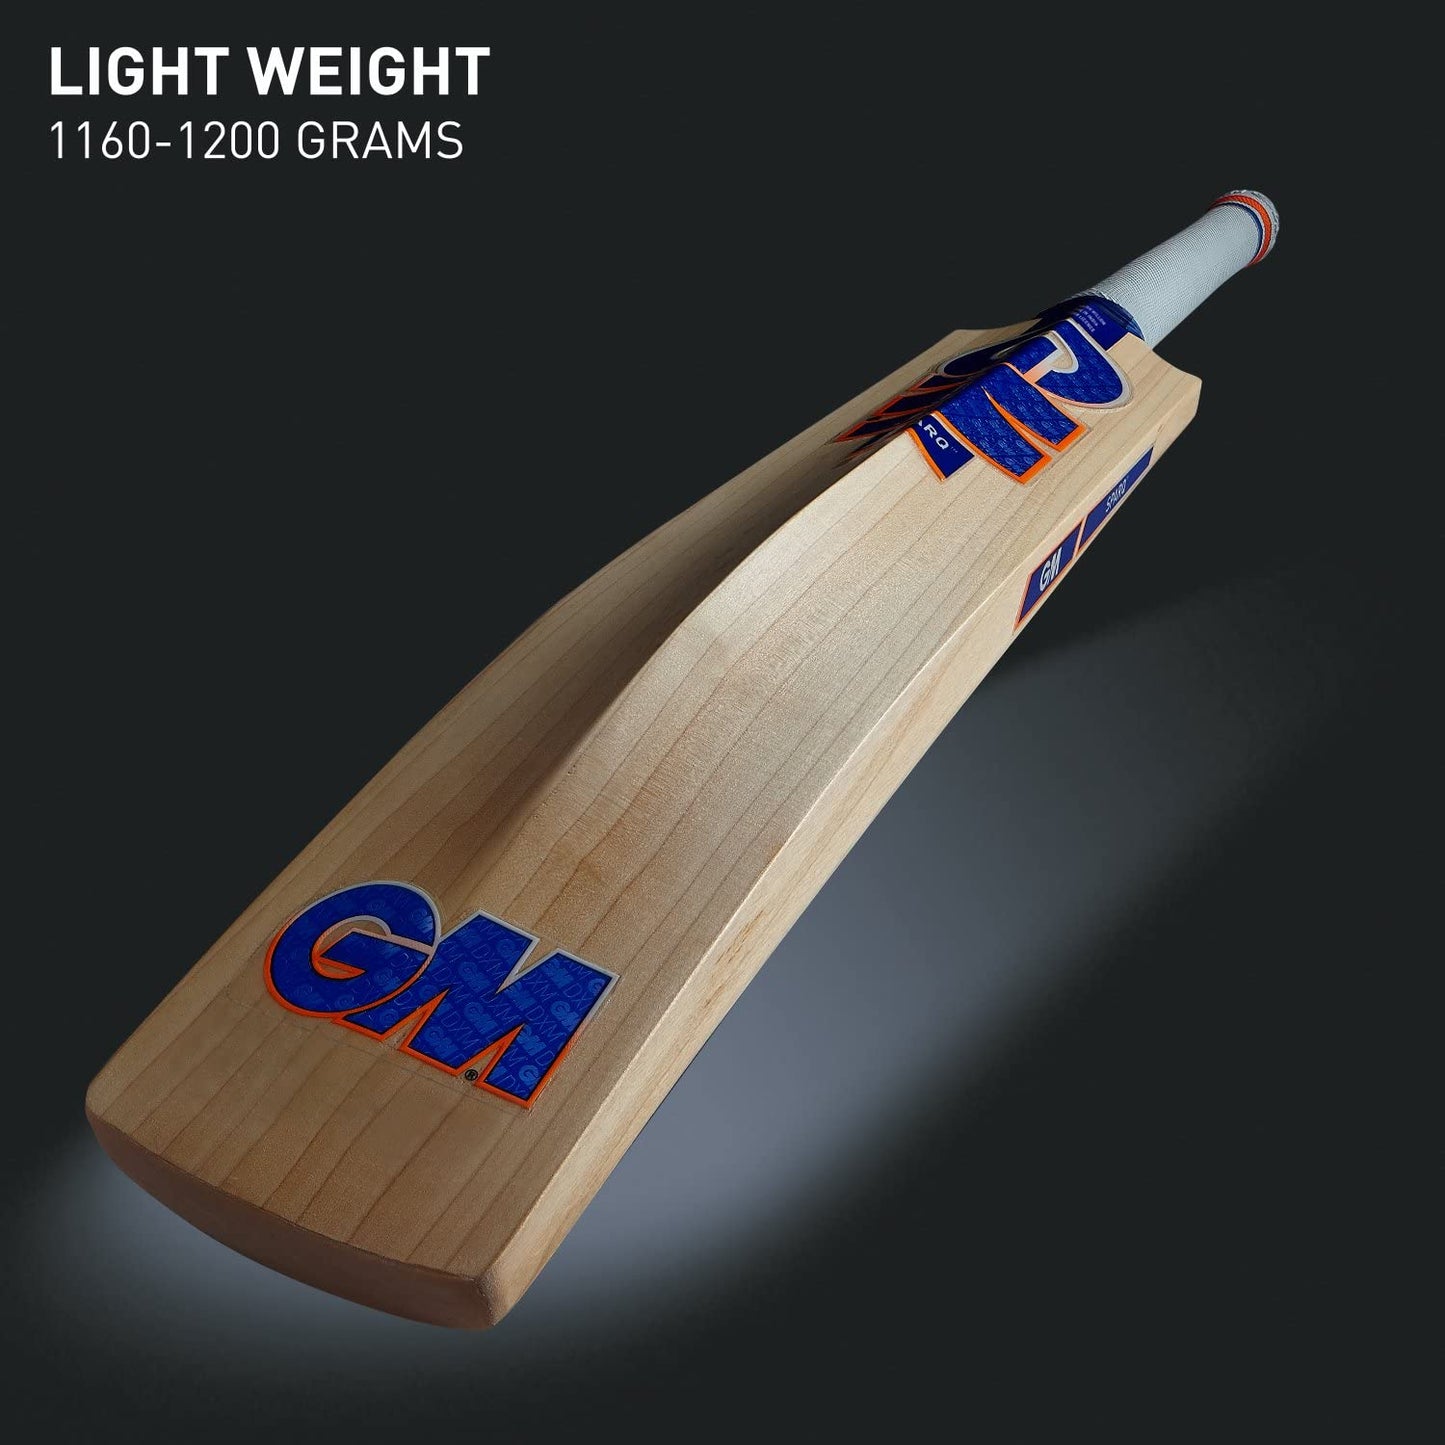 GM Sparq 404 English Willow Cricket Bat - Best Price online Prokicksports.com